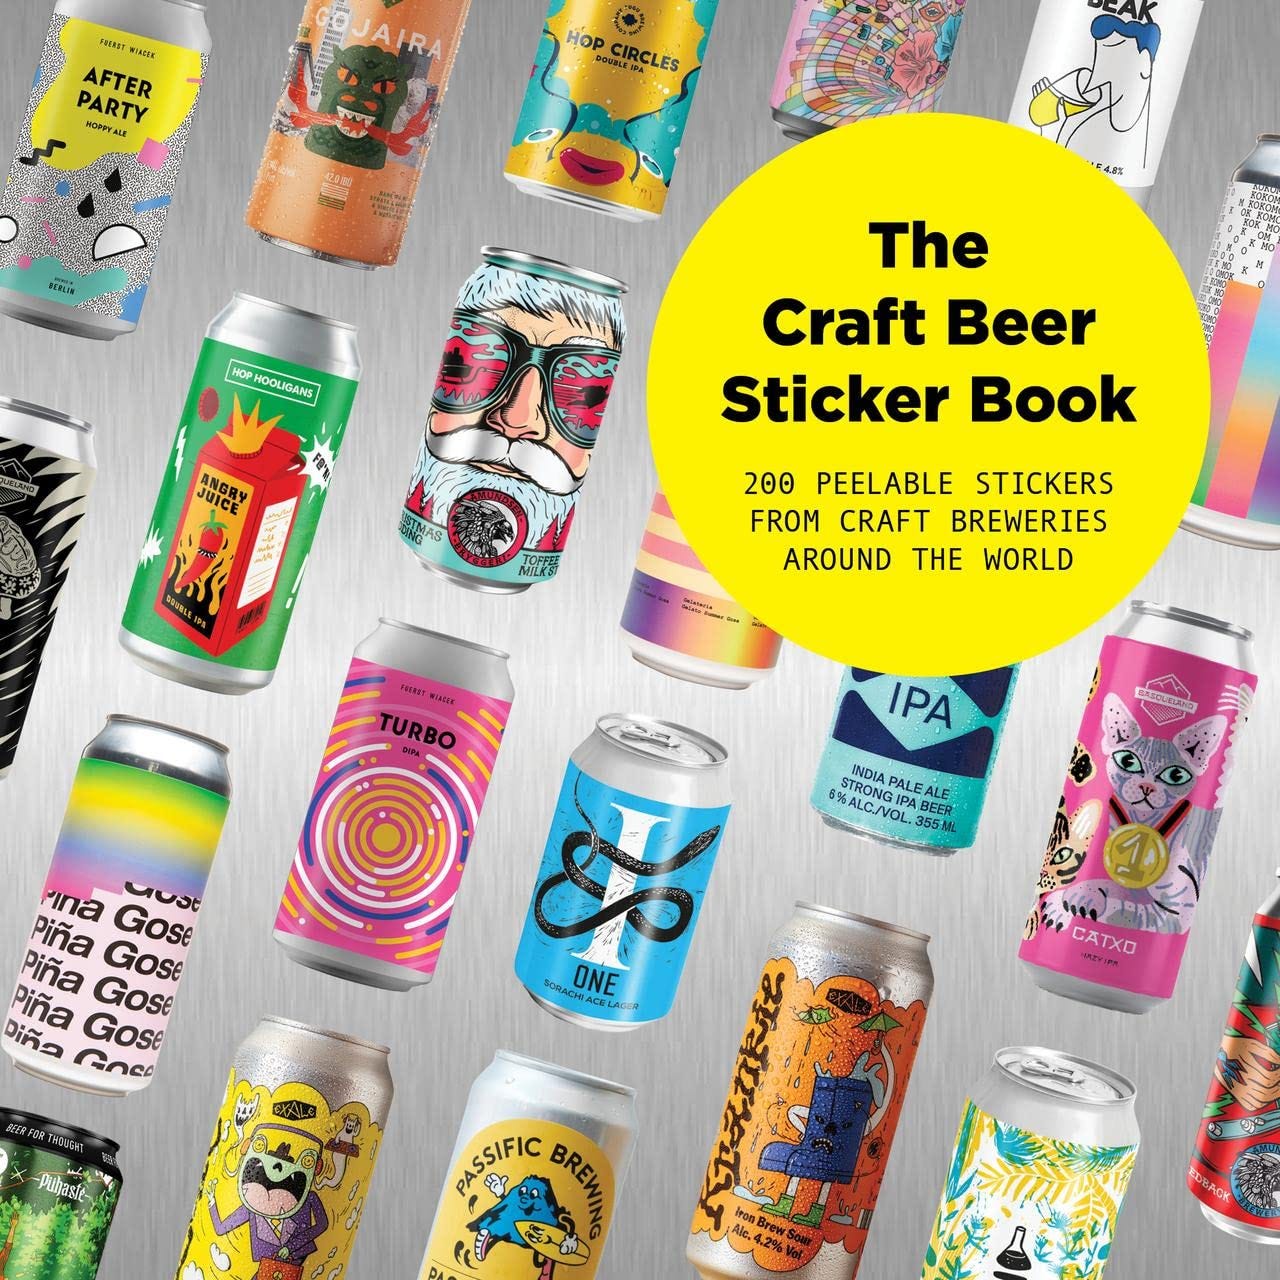 Craft Beer sticker book